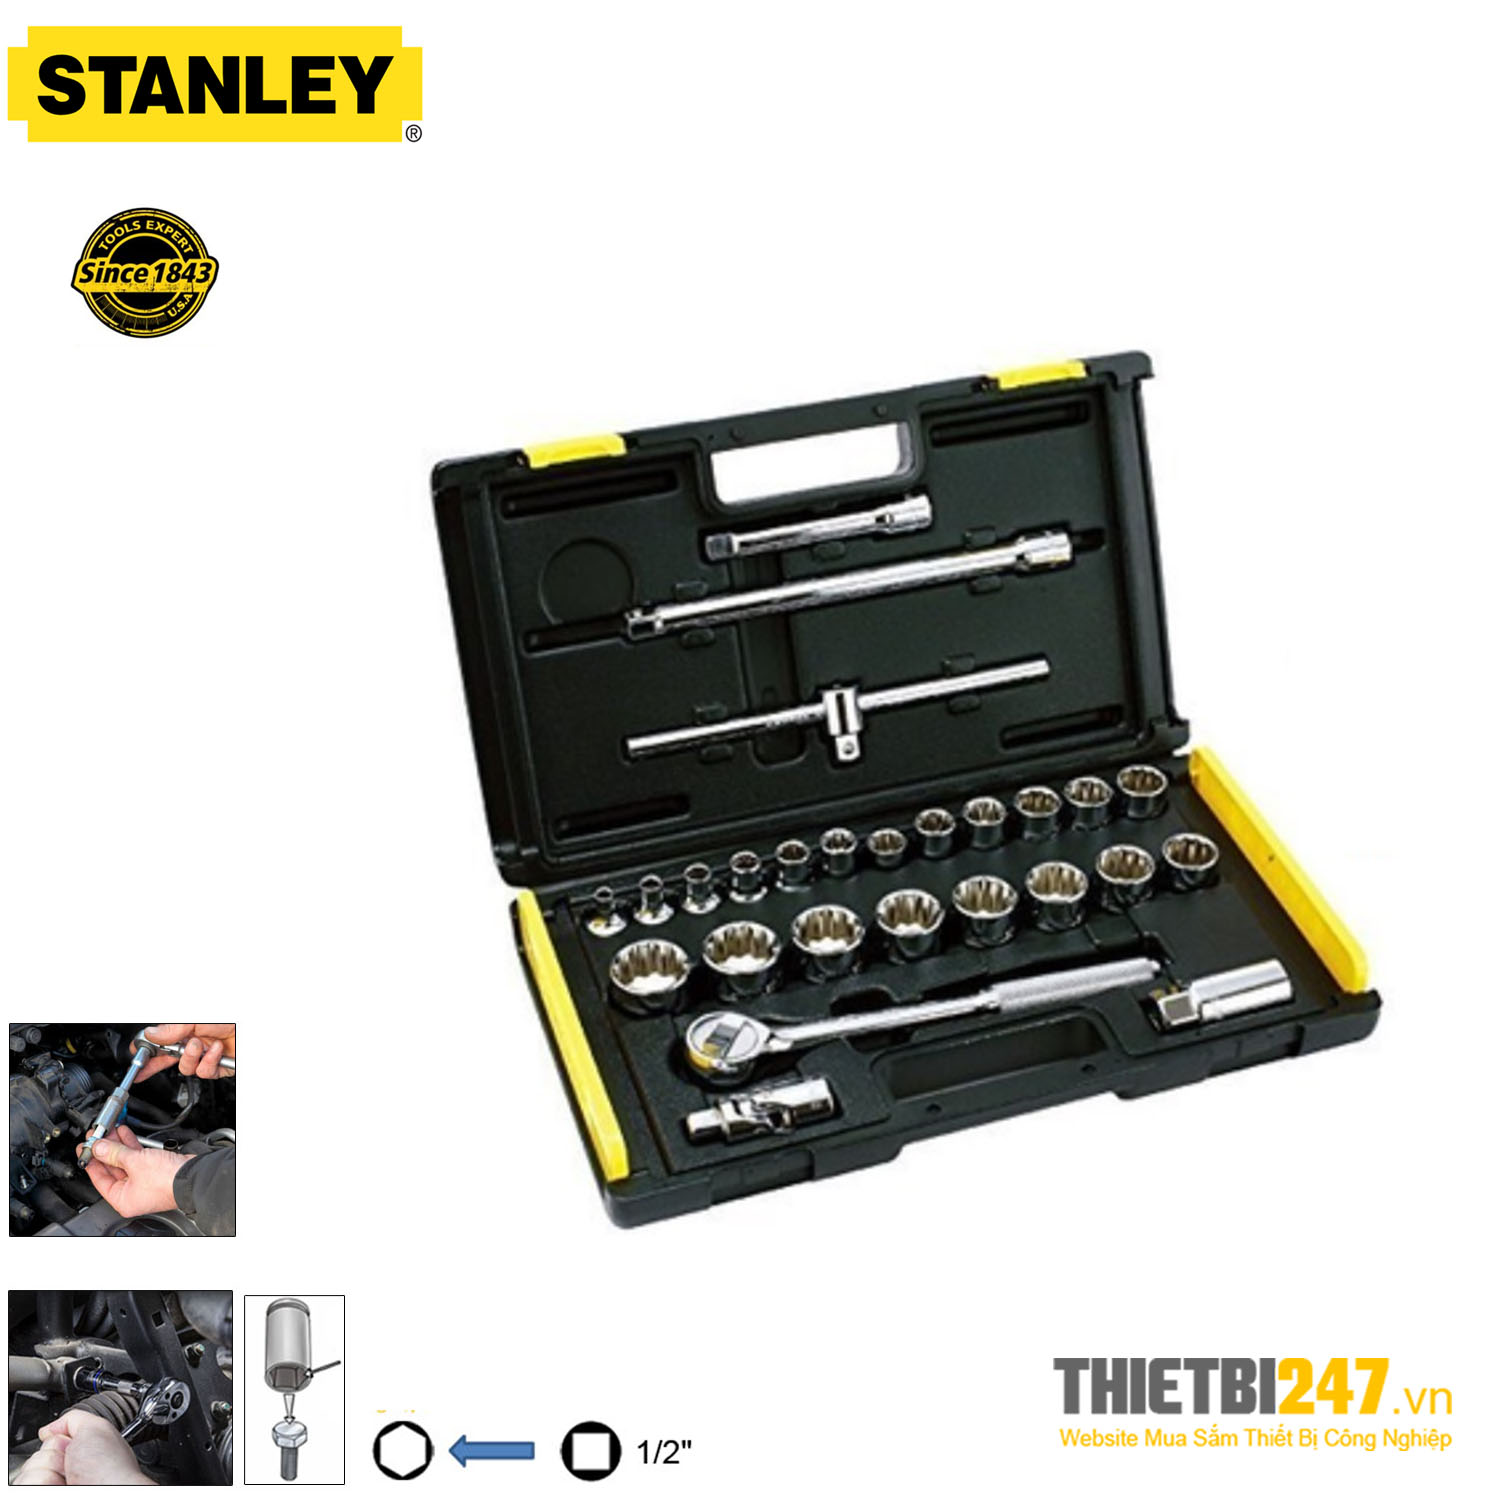 Bộ tuýp Stanley 86-477-6 27 chi tiết 10~32mm